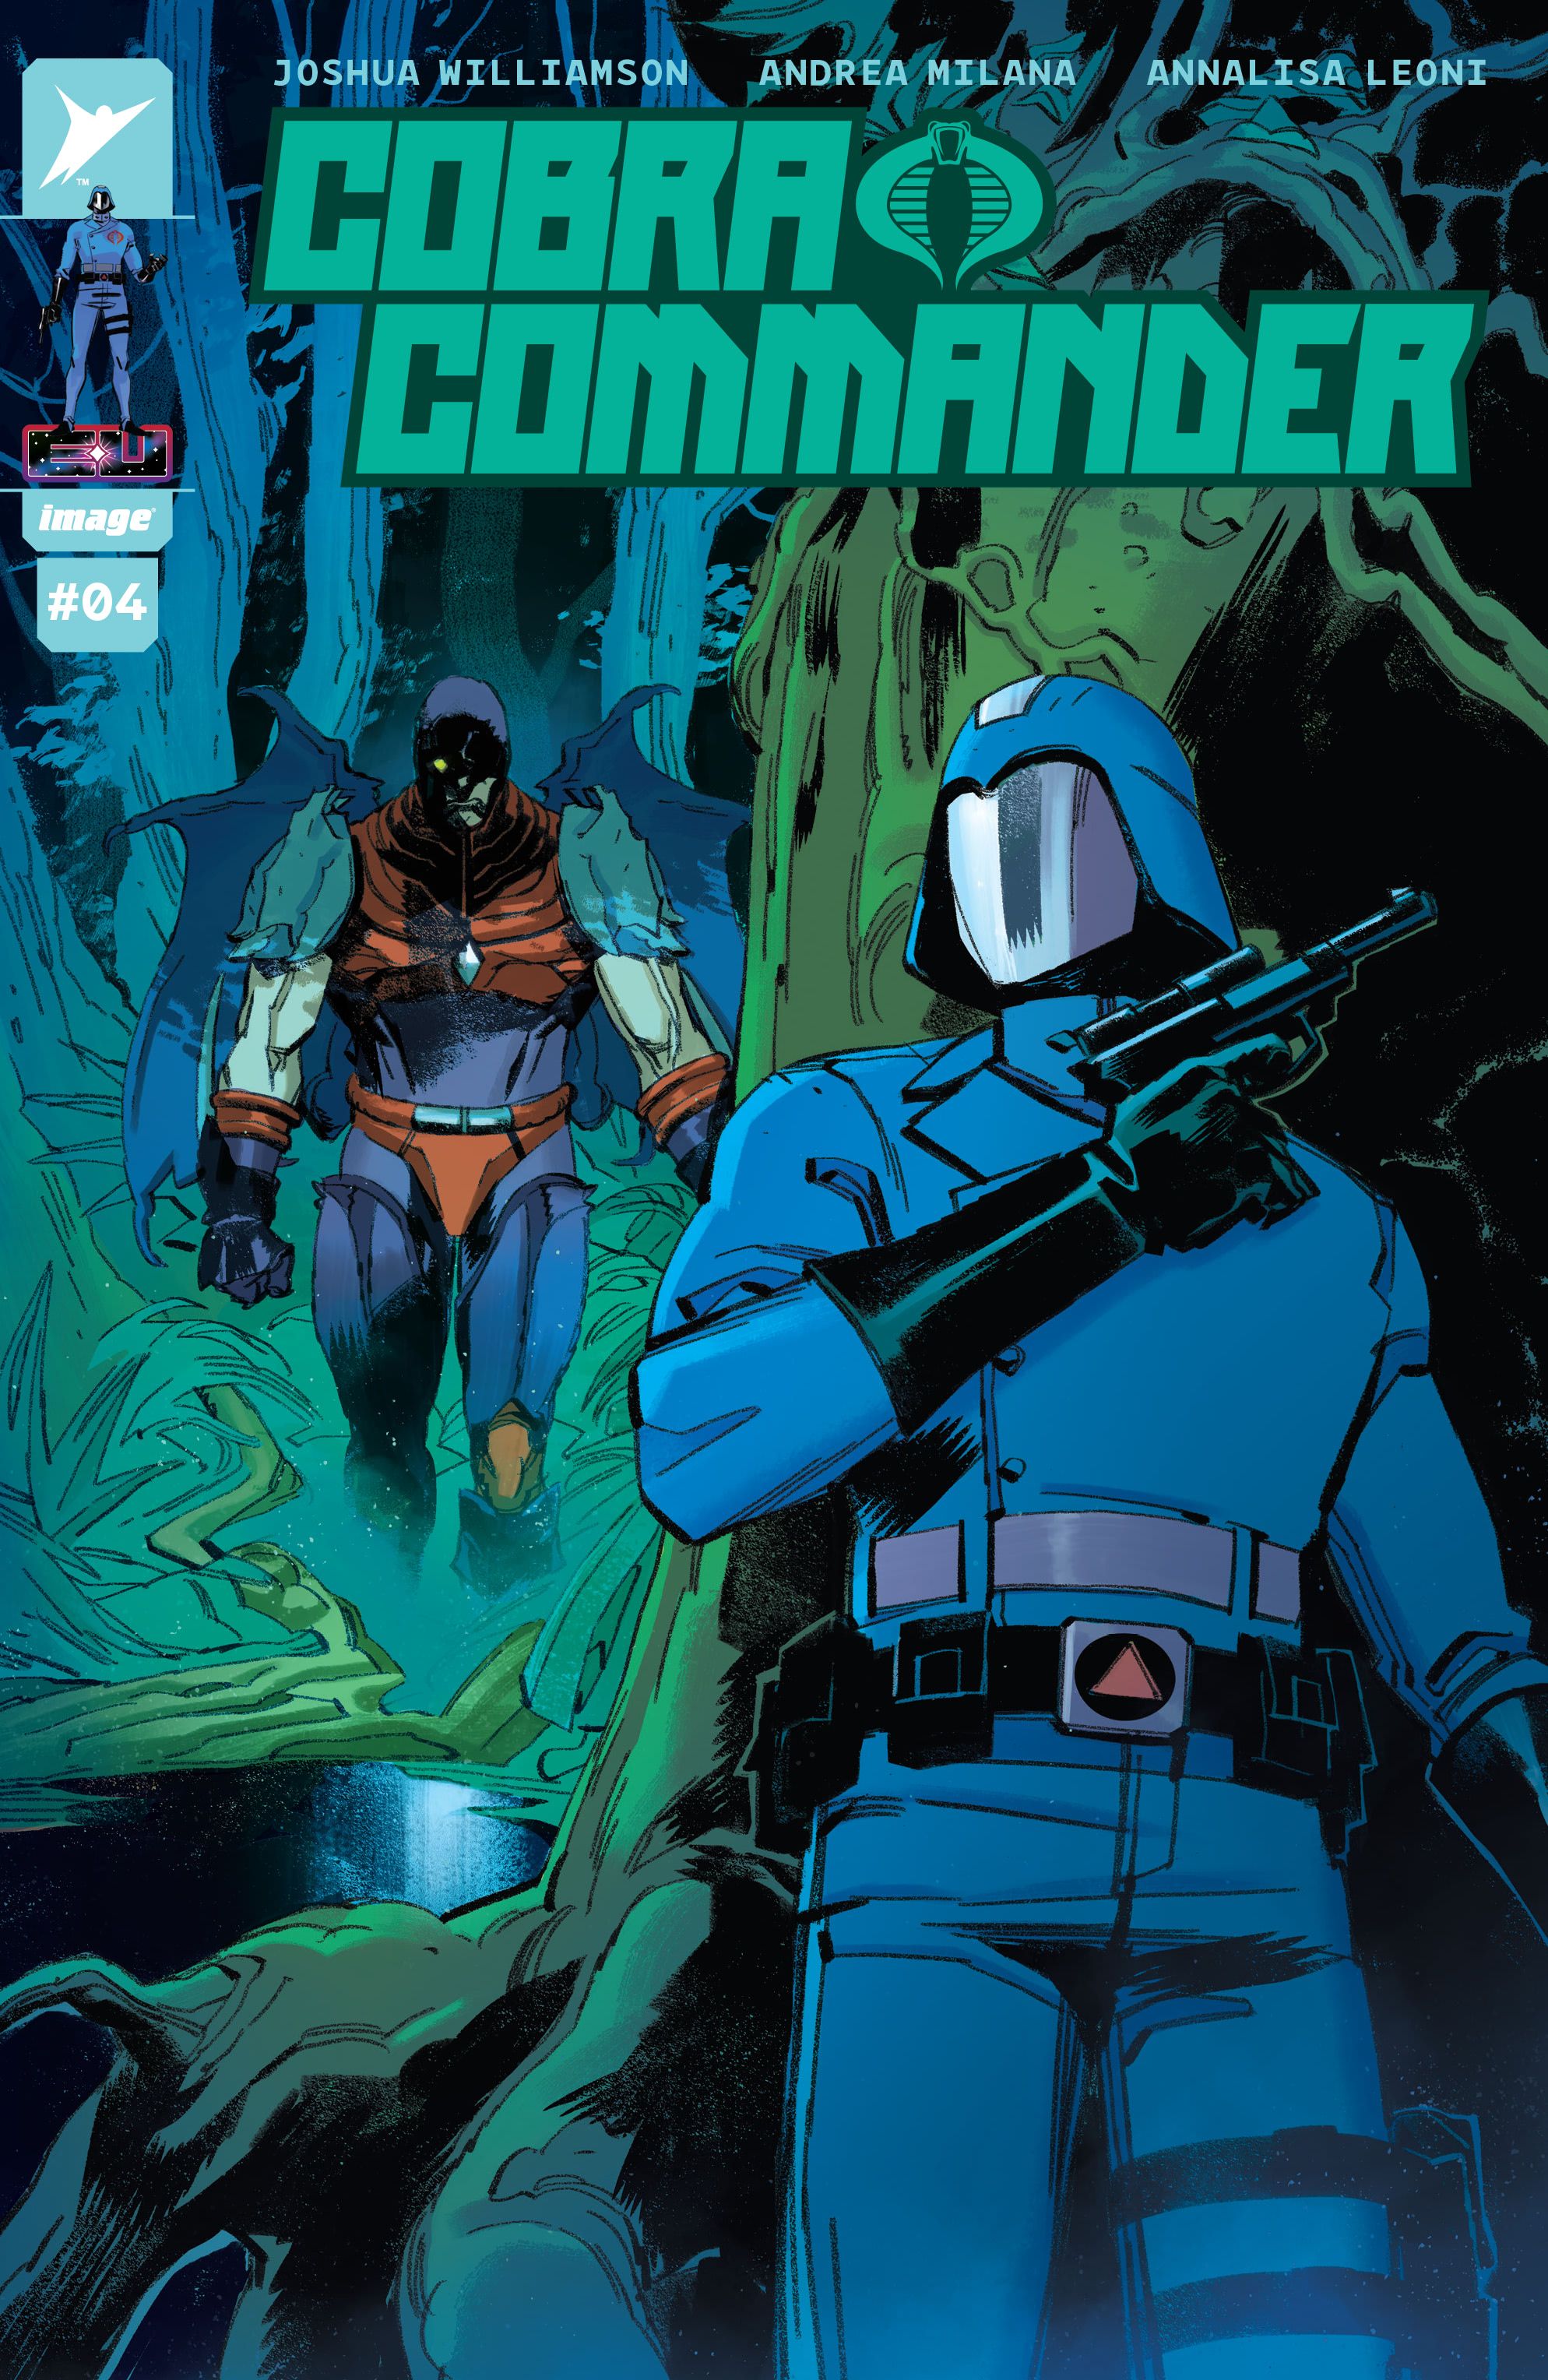 Cobra Commander #4 Okładka autorstwa Andrei Milany, dowódca chowający się za drzewem, gdy Nemesis Enforcer podąża w jego stronę